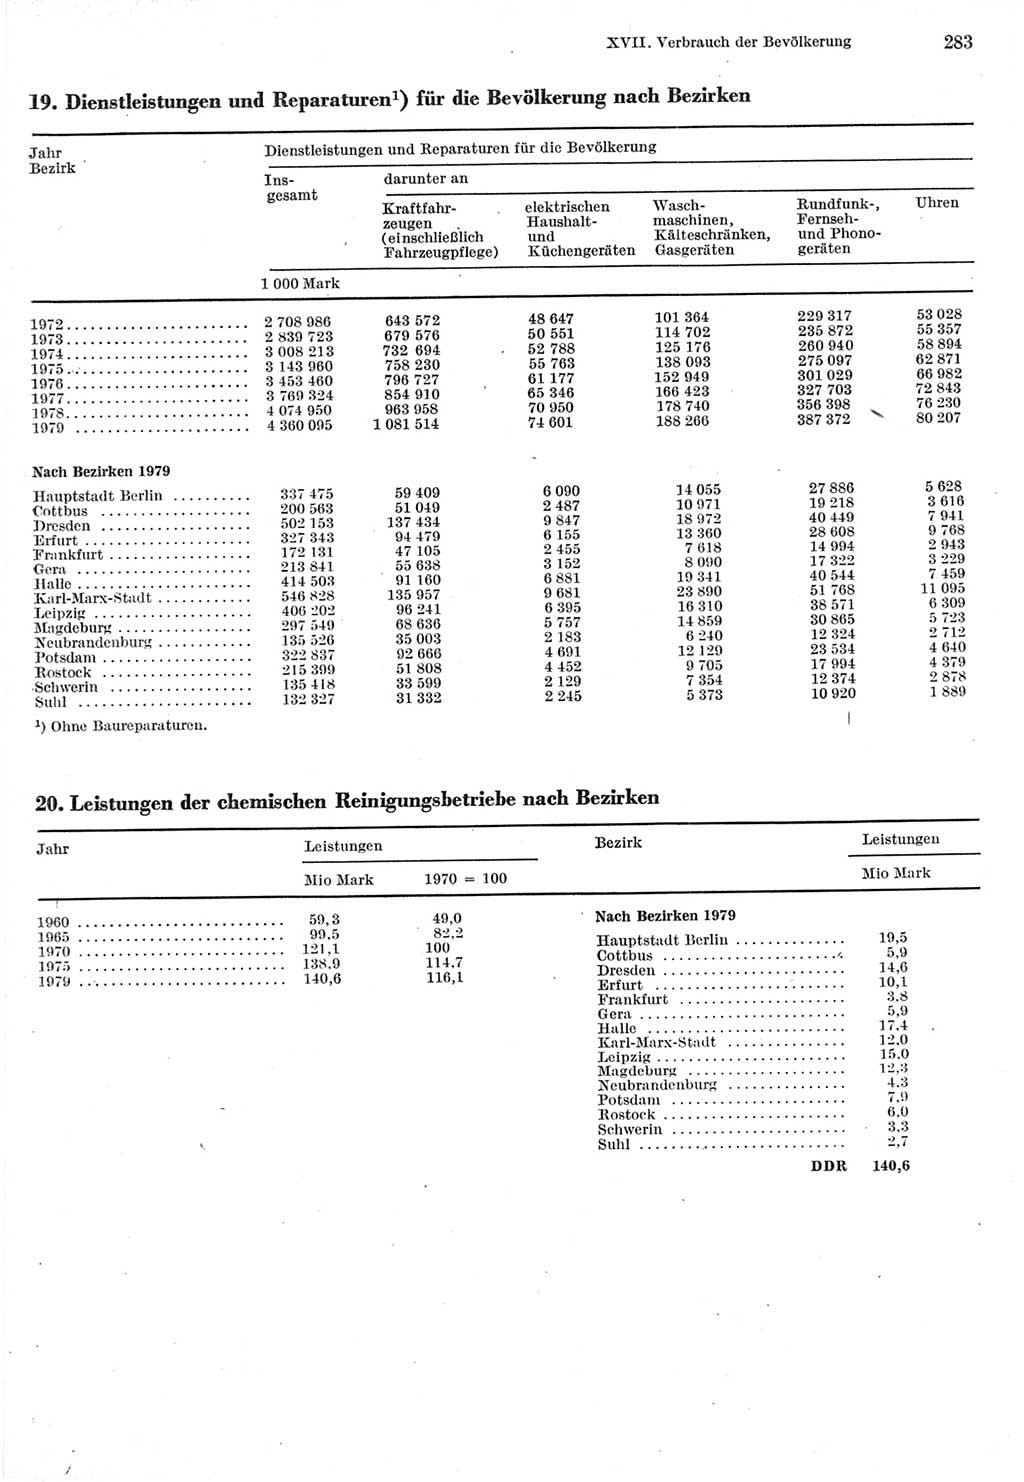 Statistisches Jahrbuch der Deutschen Demokratischen Republik (DDR) 1980, Seite 283 (Stat. Jb. DDR 1980, S. 283)